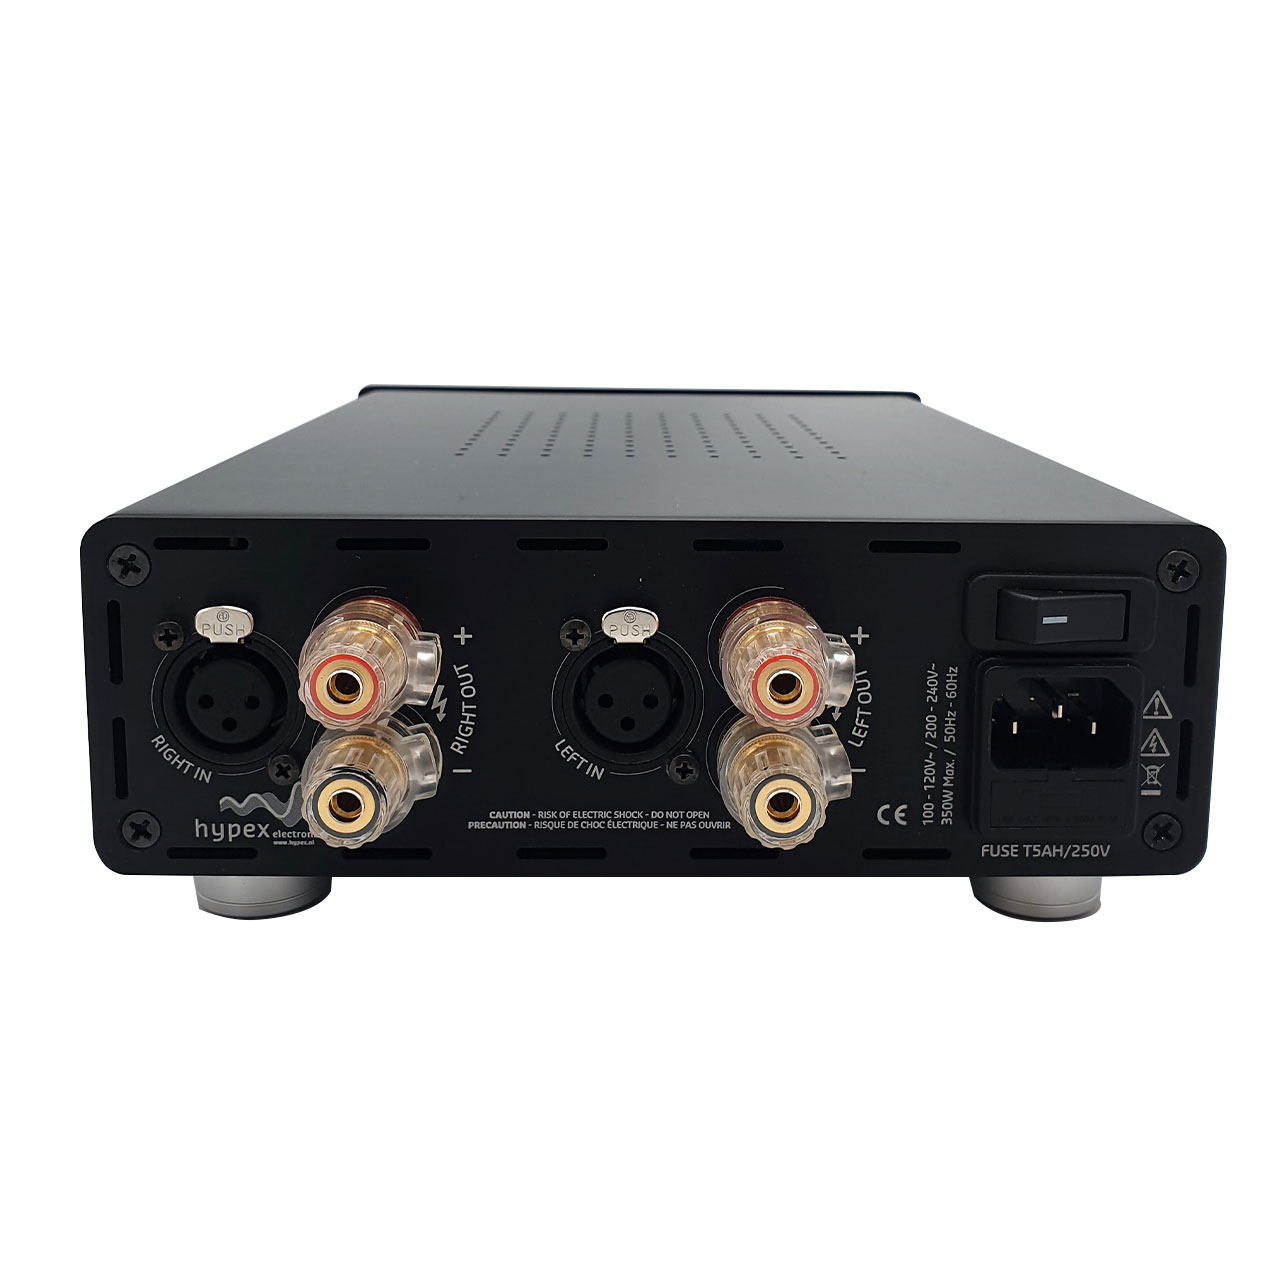 DIYclassD UcD™ 180 DIY amplifier stereo kit